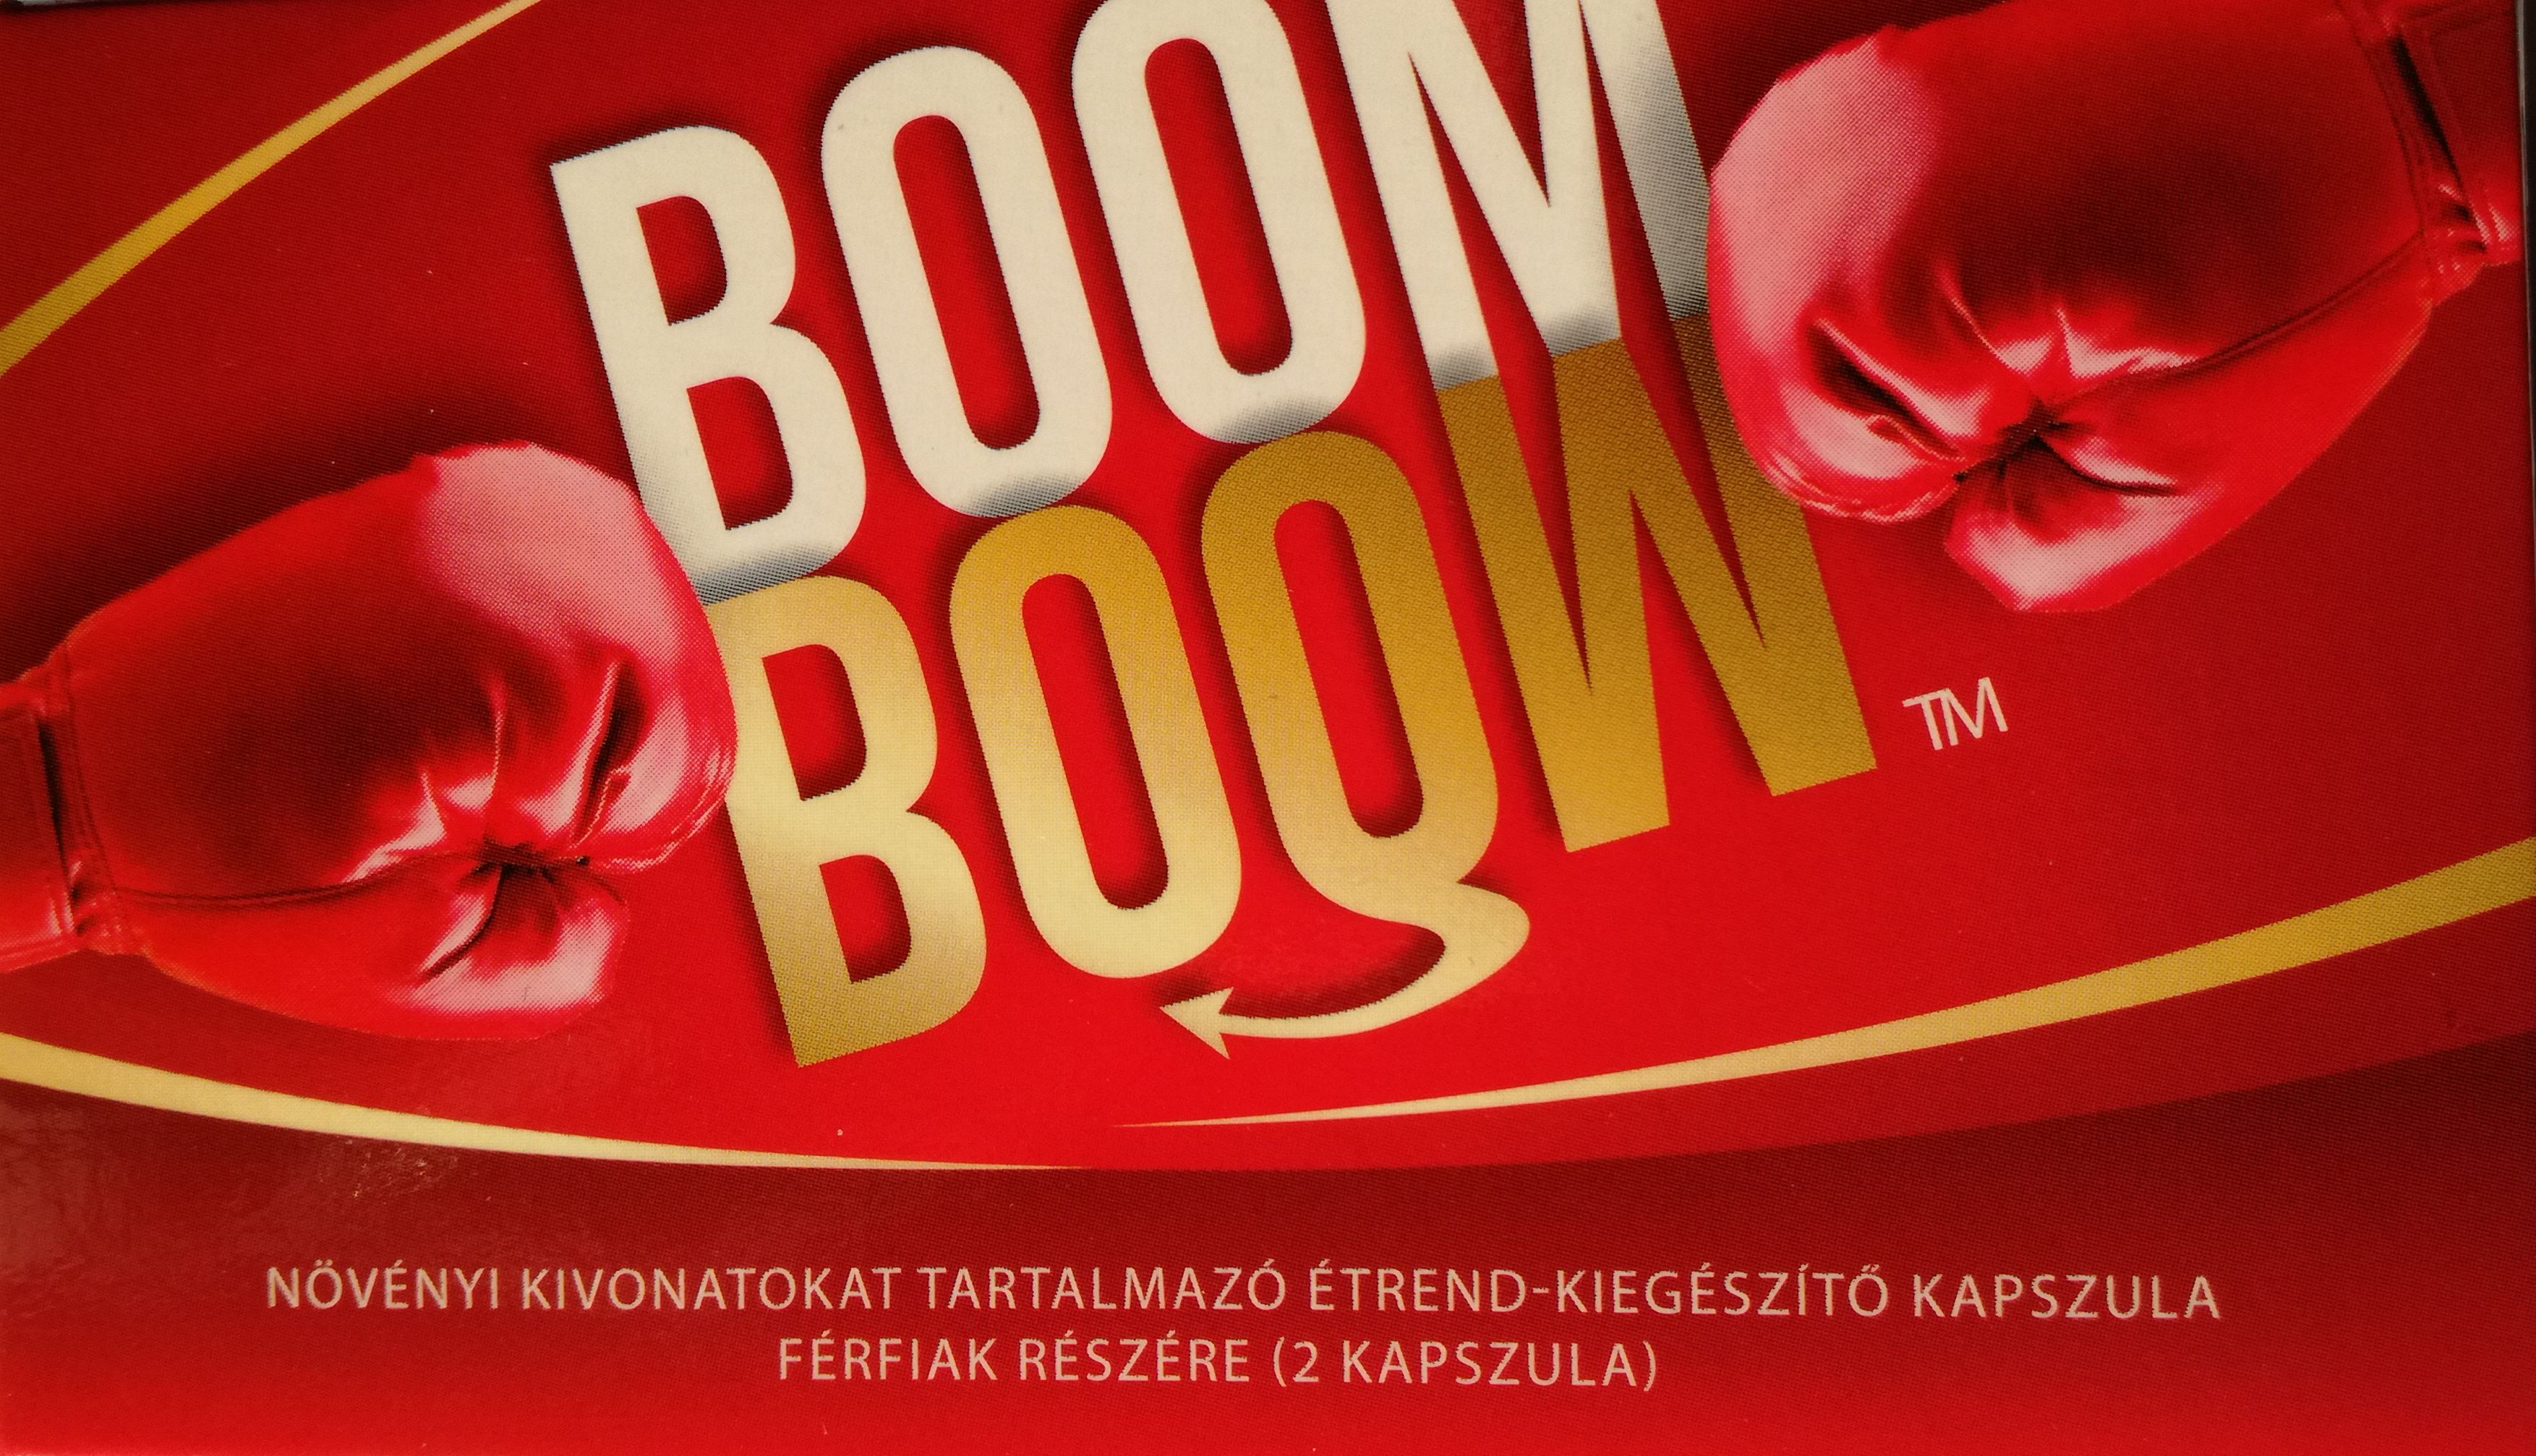 BoomBoom növényi kivonatokat tartalmazó étrend-kiegészítő kapszula férfiak részére (2 kapszula)